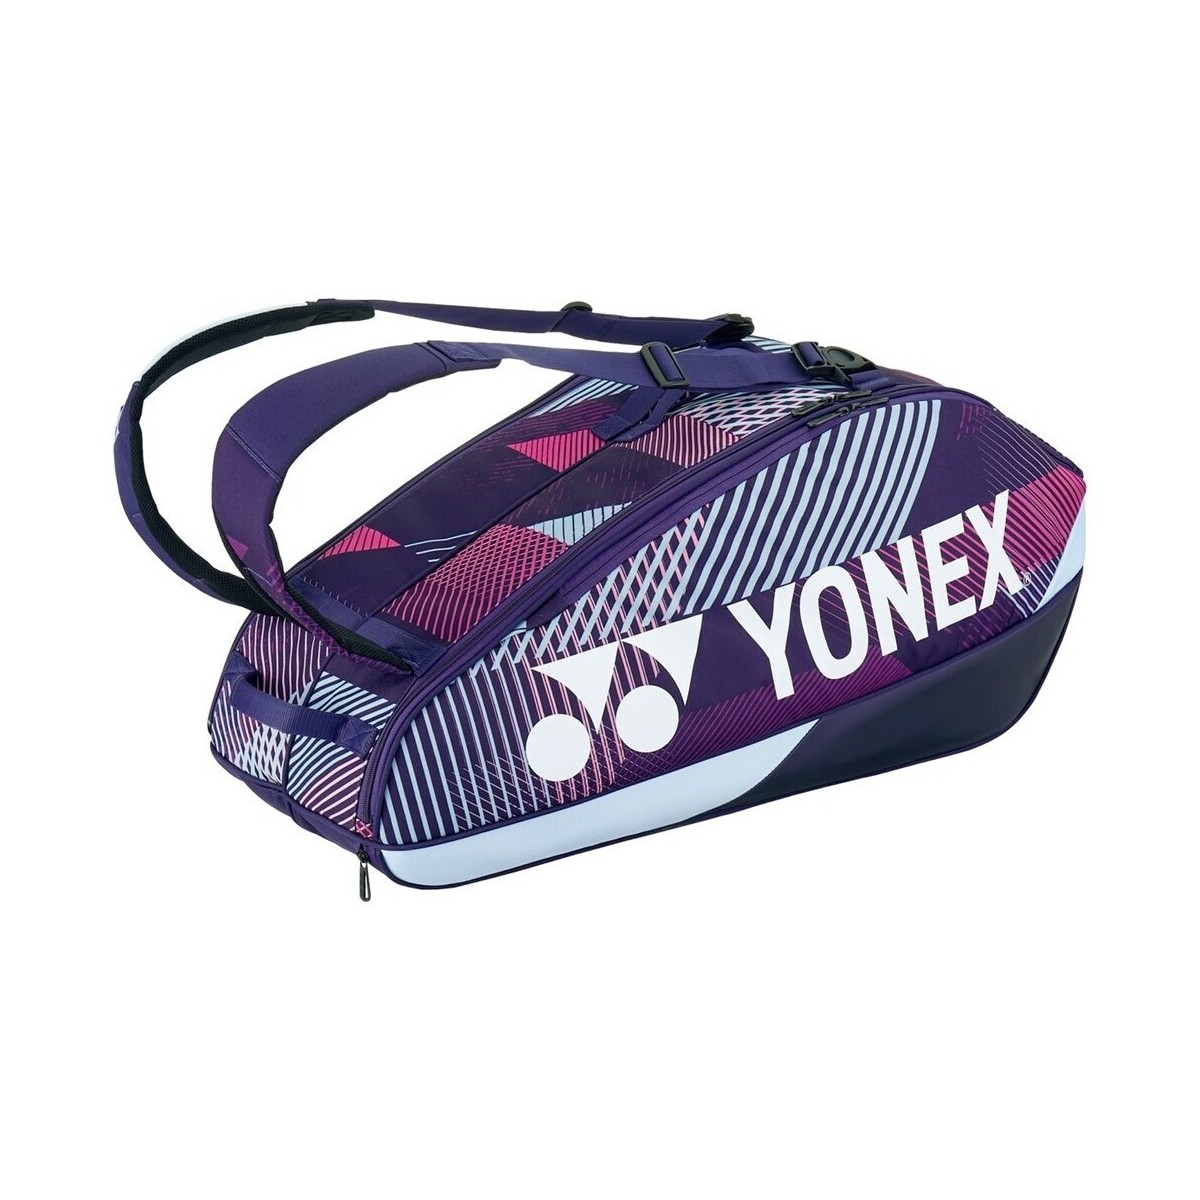 Bags Bag Yonex Pro Racquet Violet, White